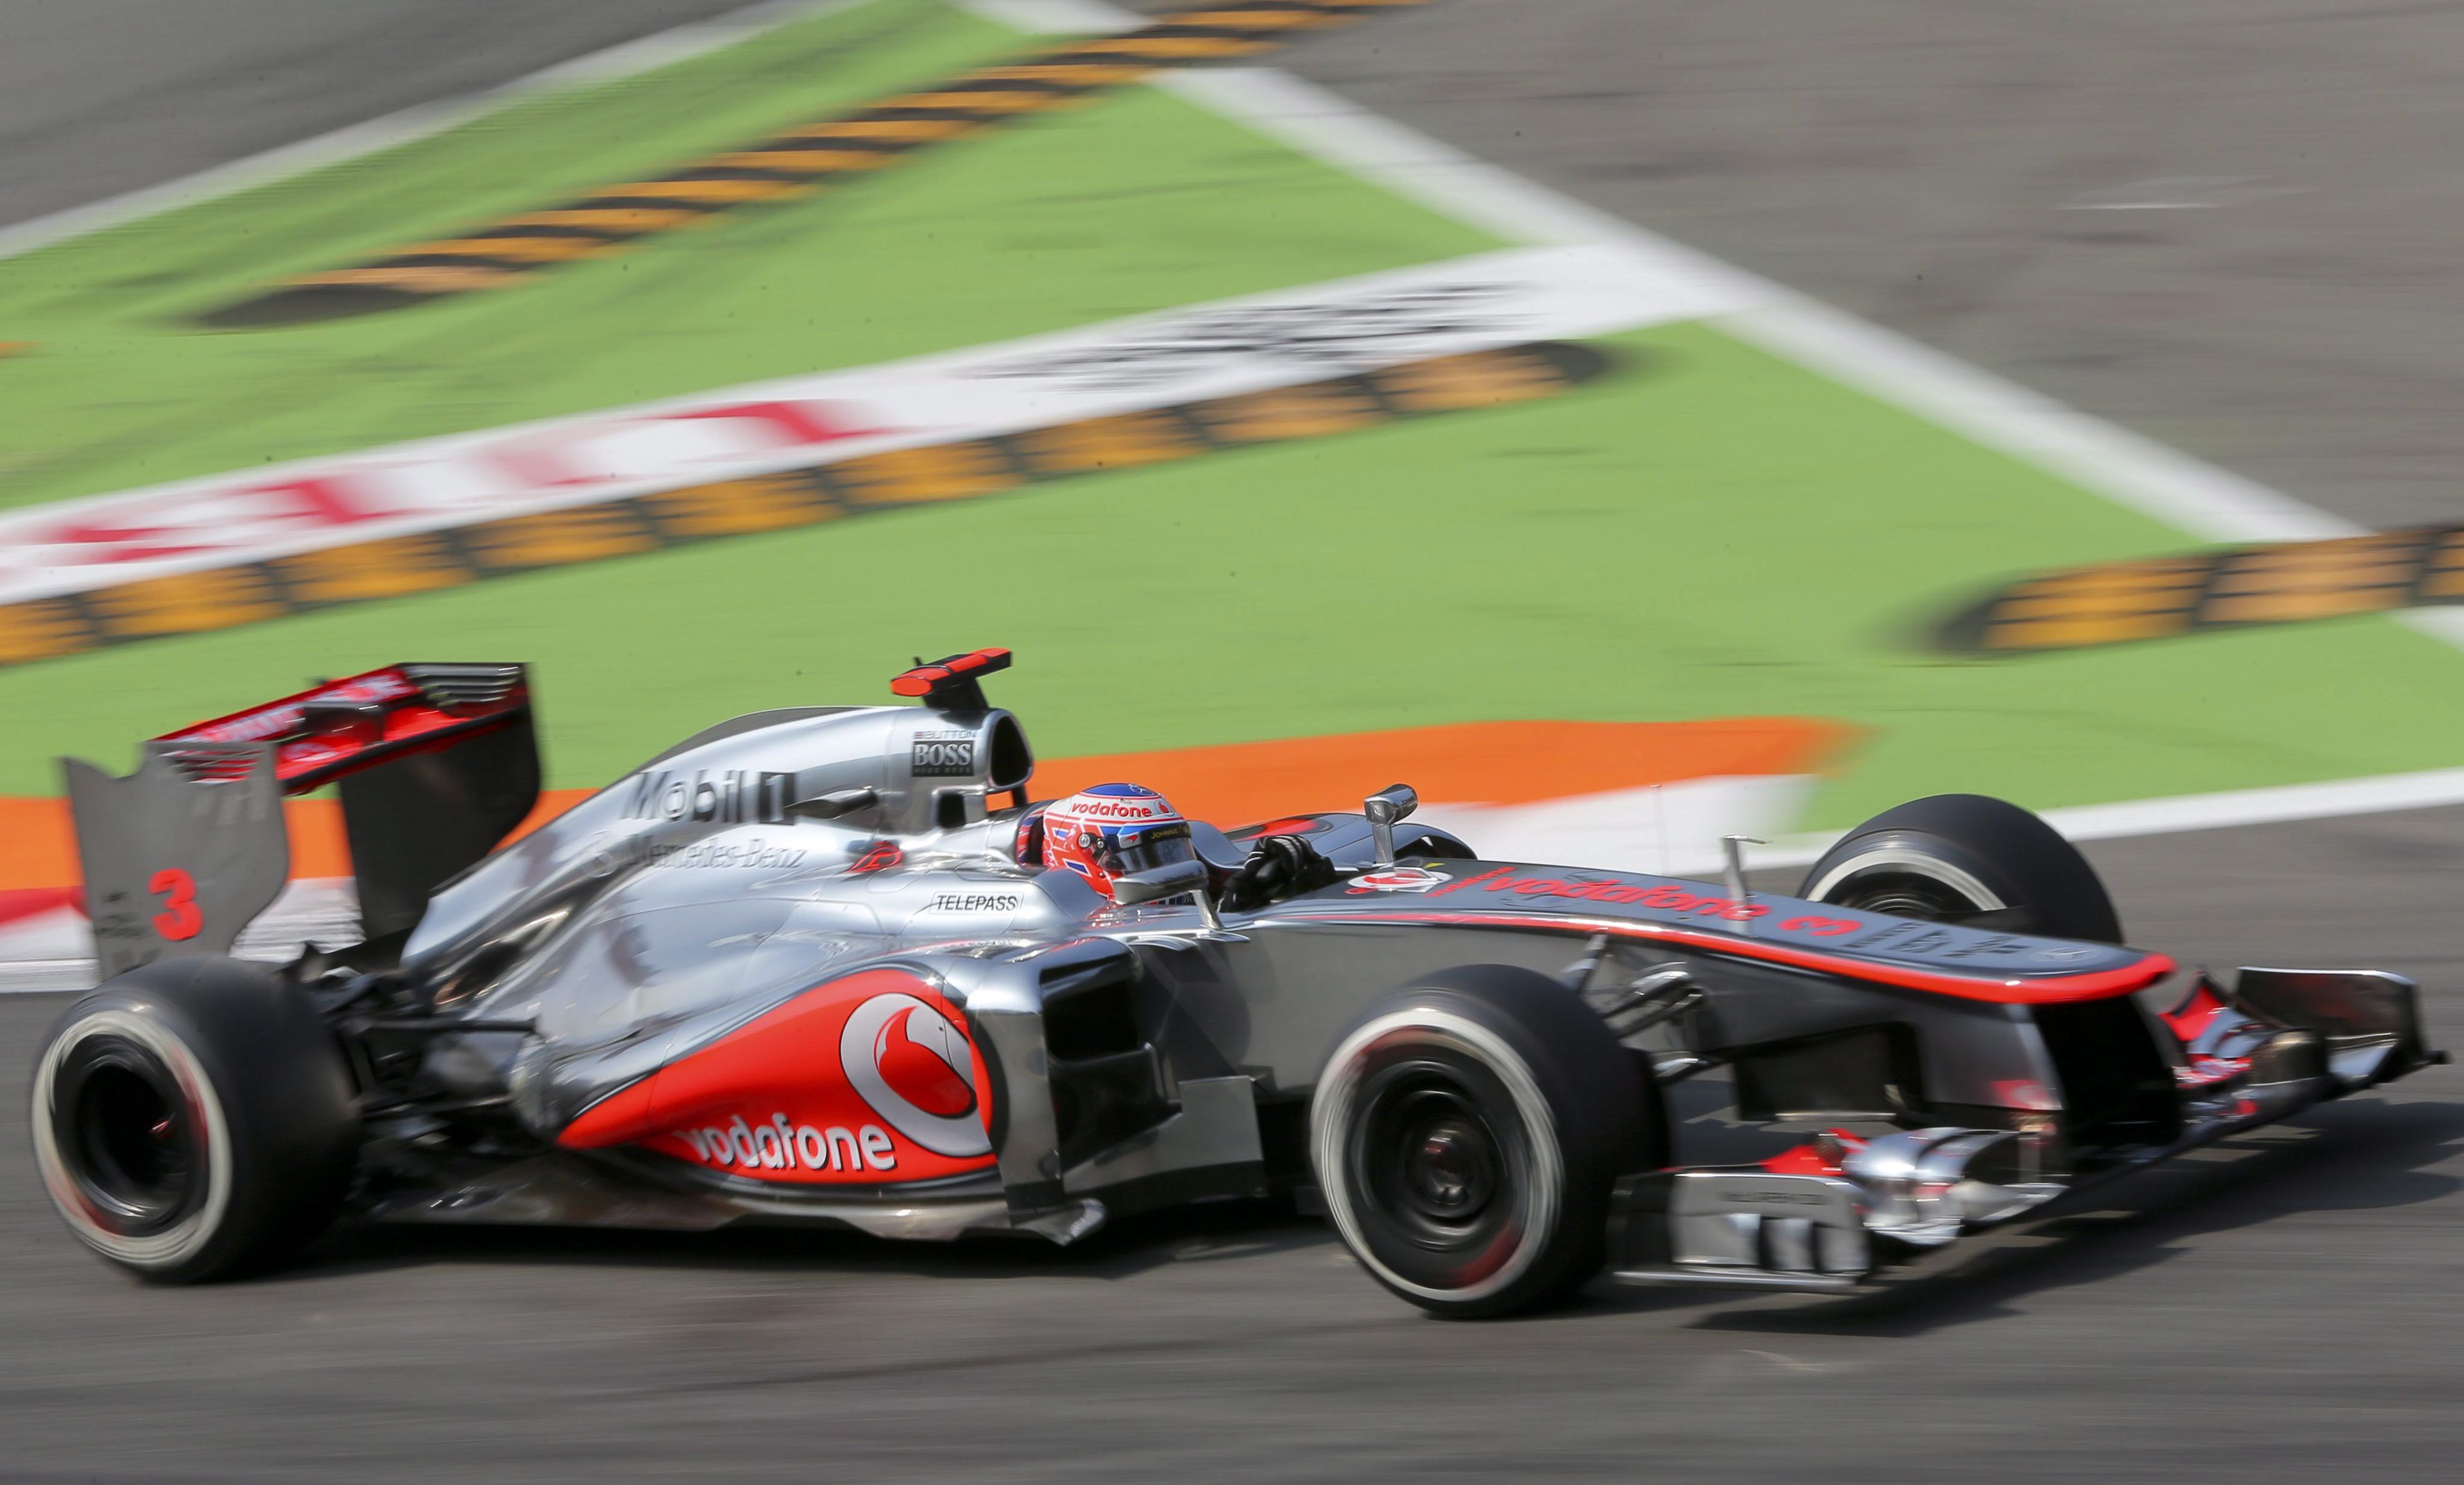 Akár kétmilliárd forintért adhatják el Lewis Hamilton 2010-es autóját. / Fotó: MTI/EPA/Valdrin Xhemaj